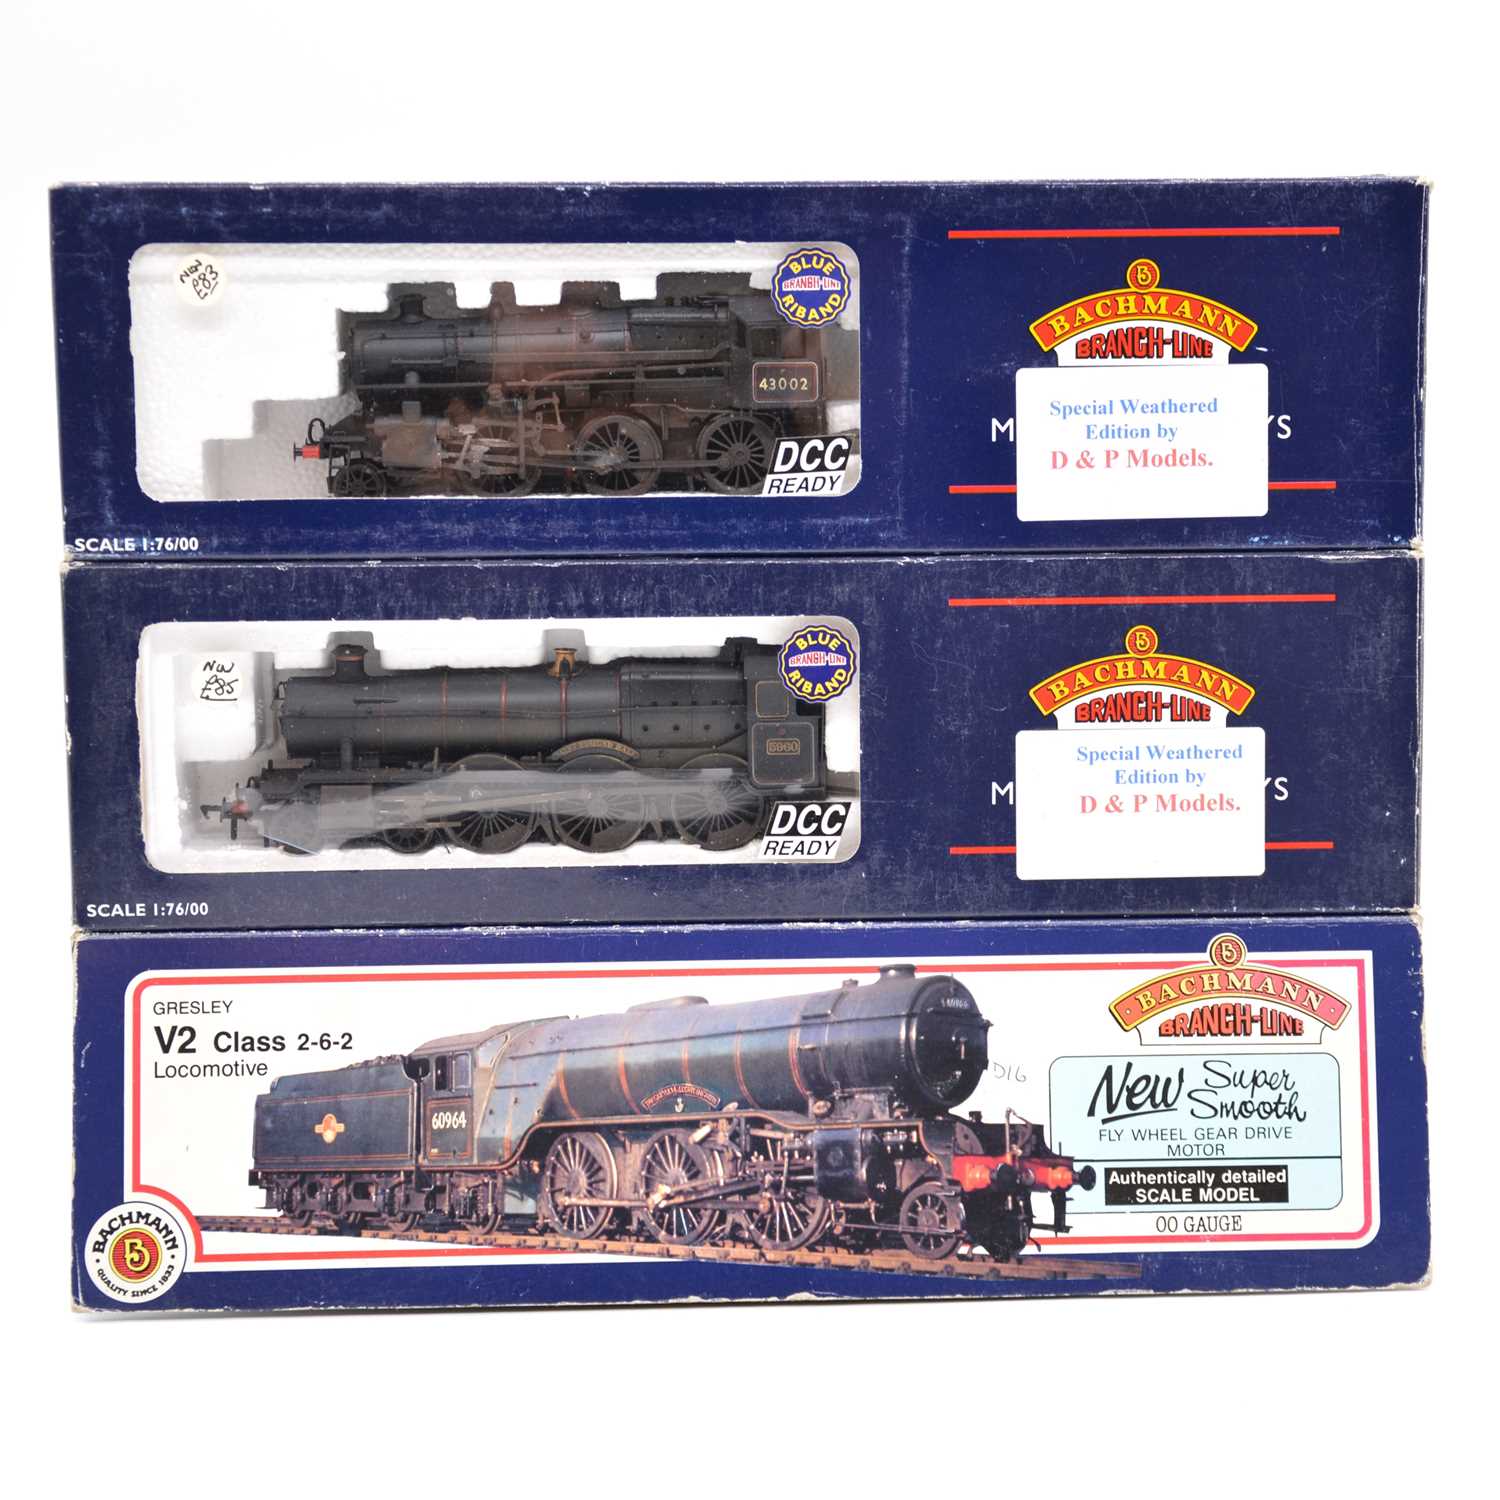 Lot 204 - Three Bachmann OO gauge model railway steam locomotives with tenders